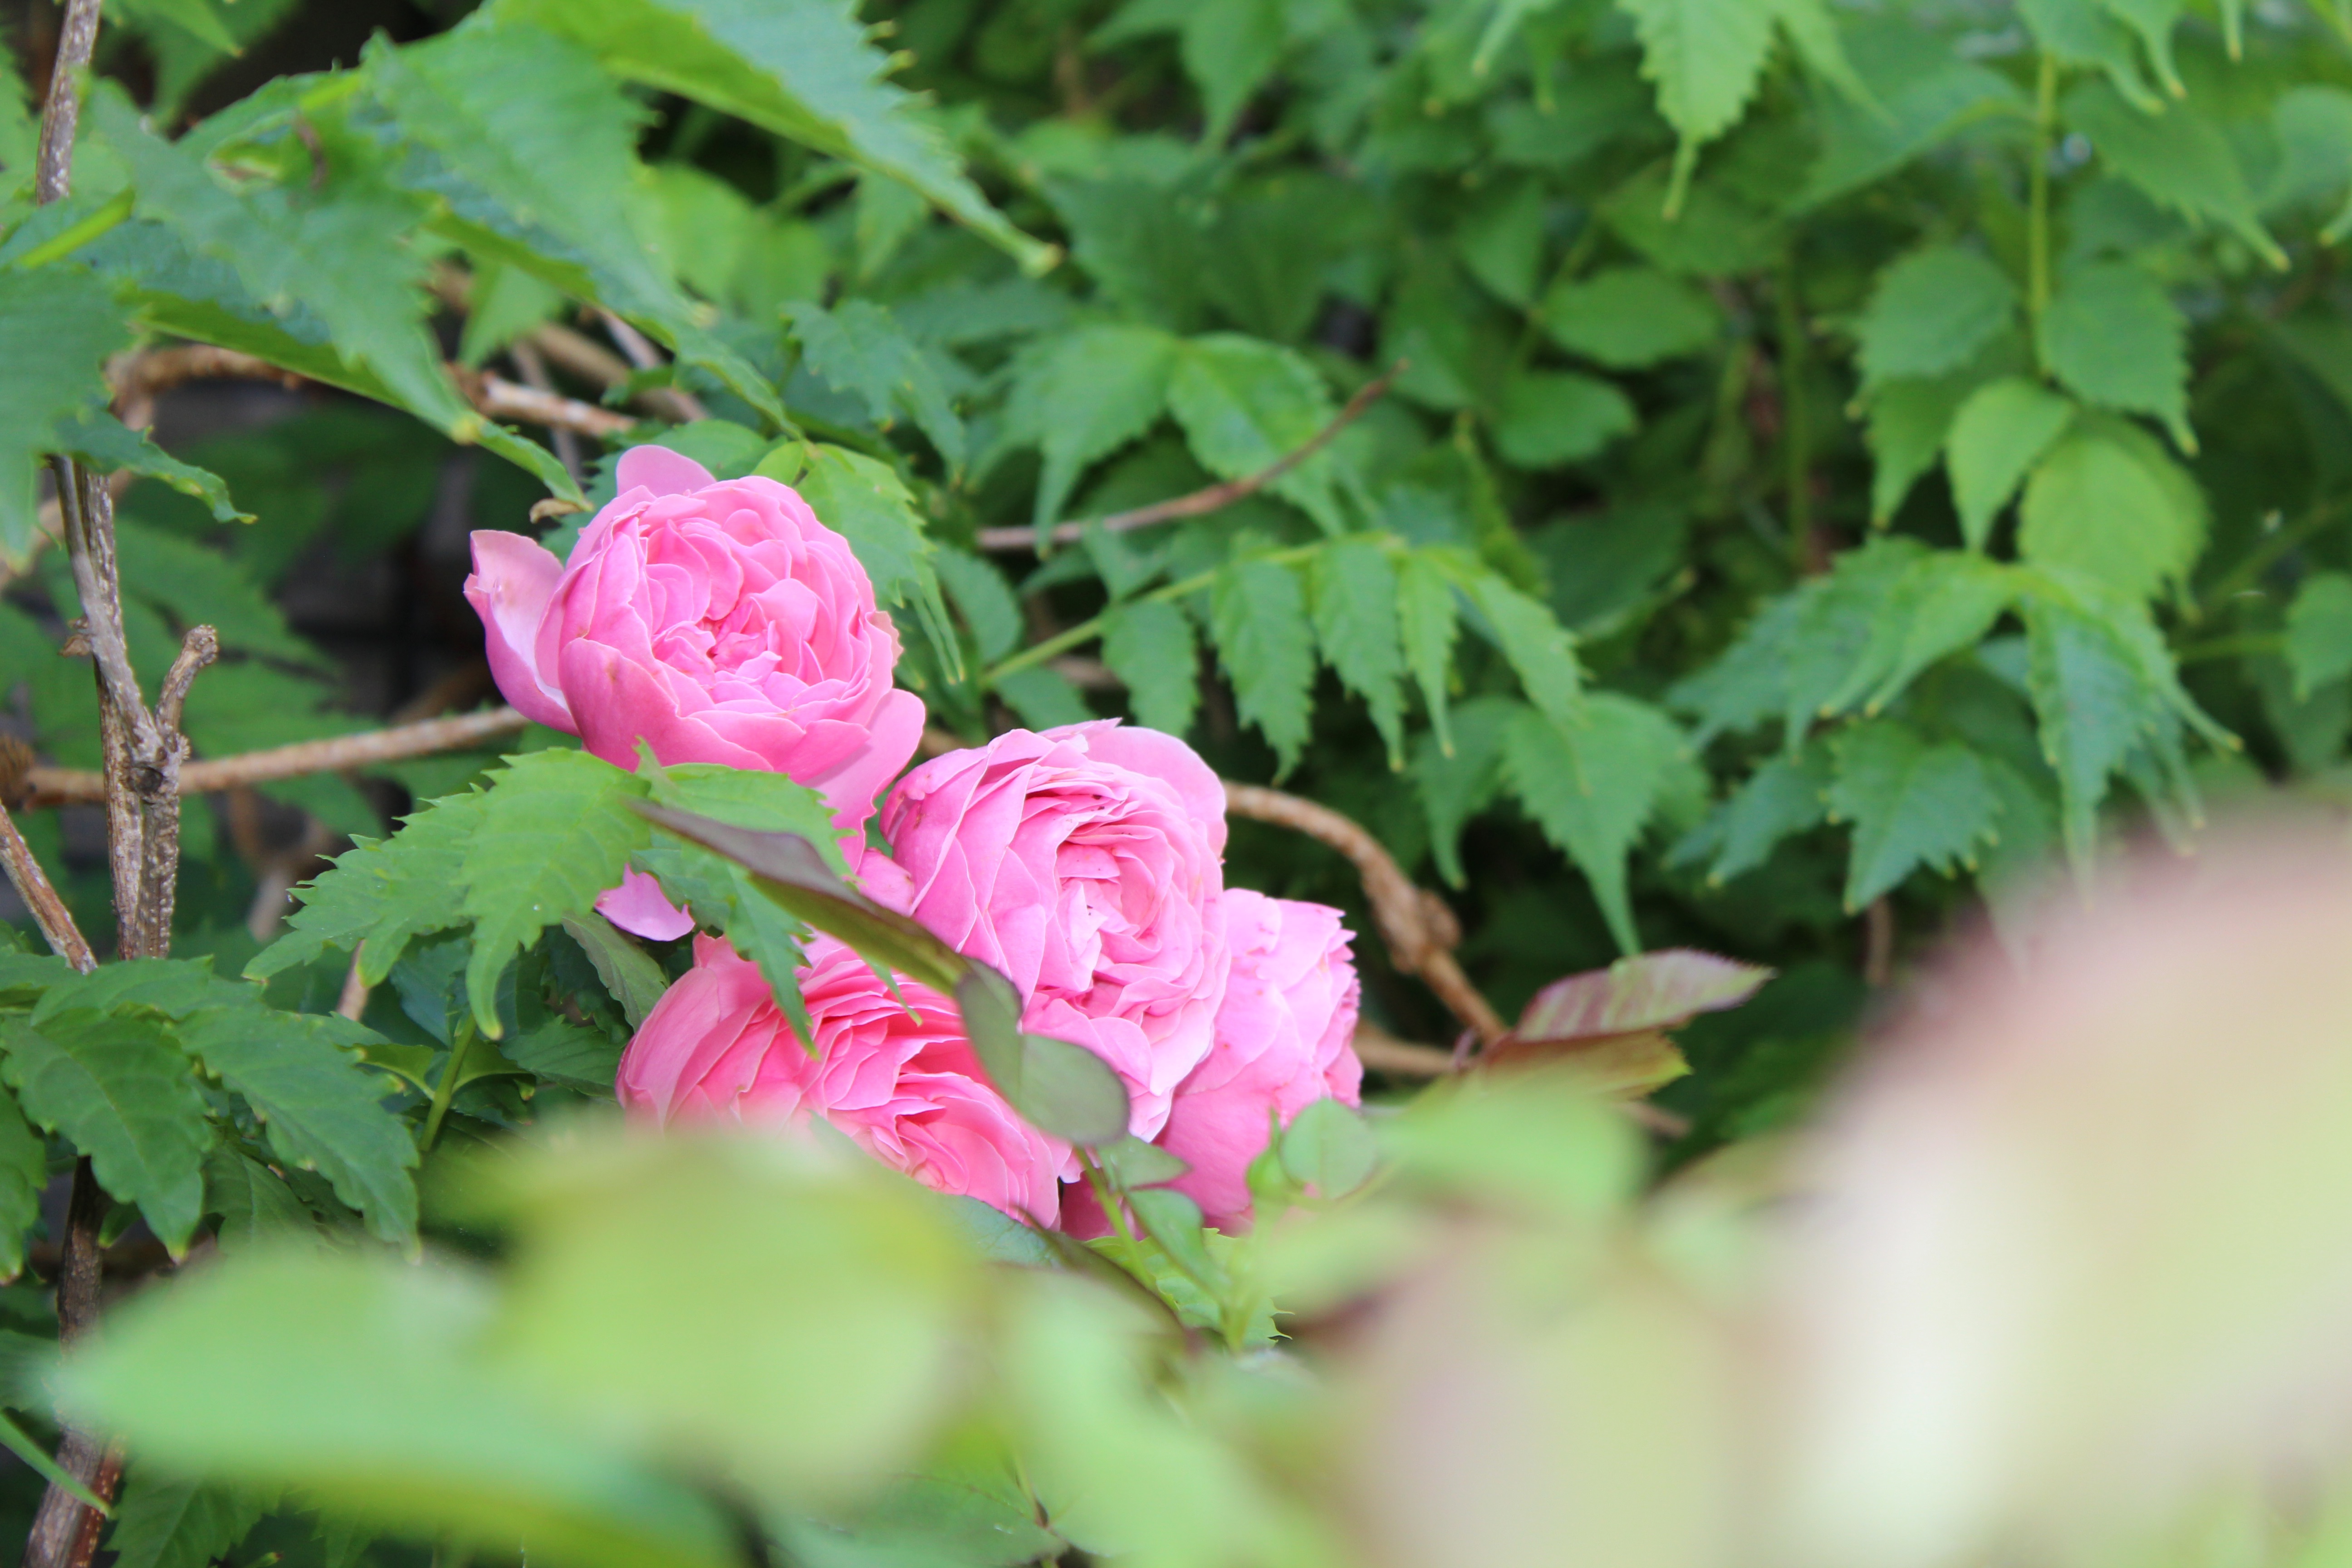 返り咲きの薔薇、レオナルドダビンチの花は初めて見ました。